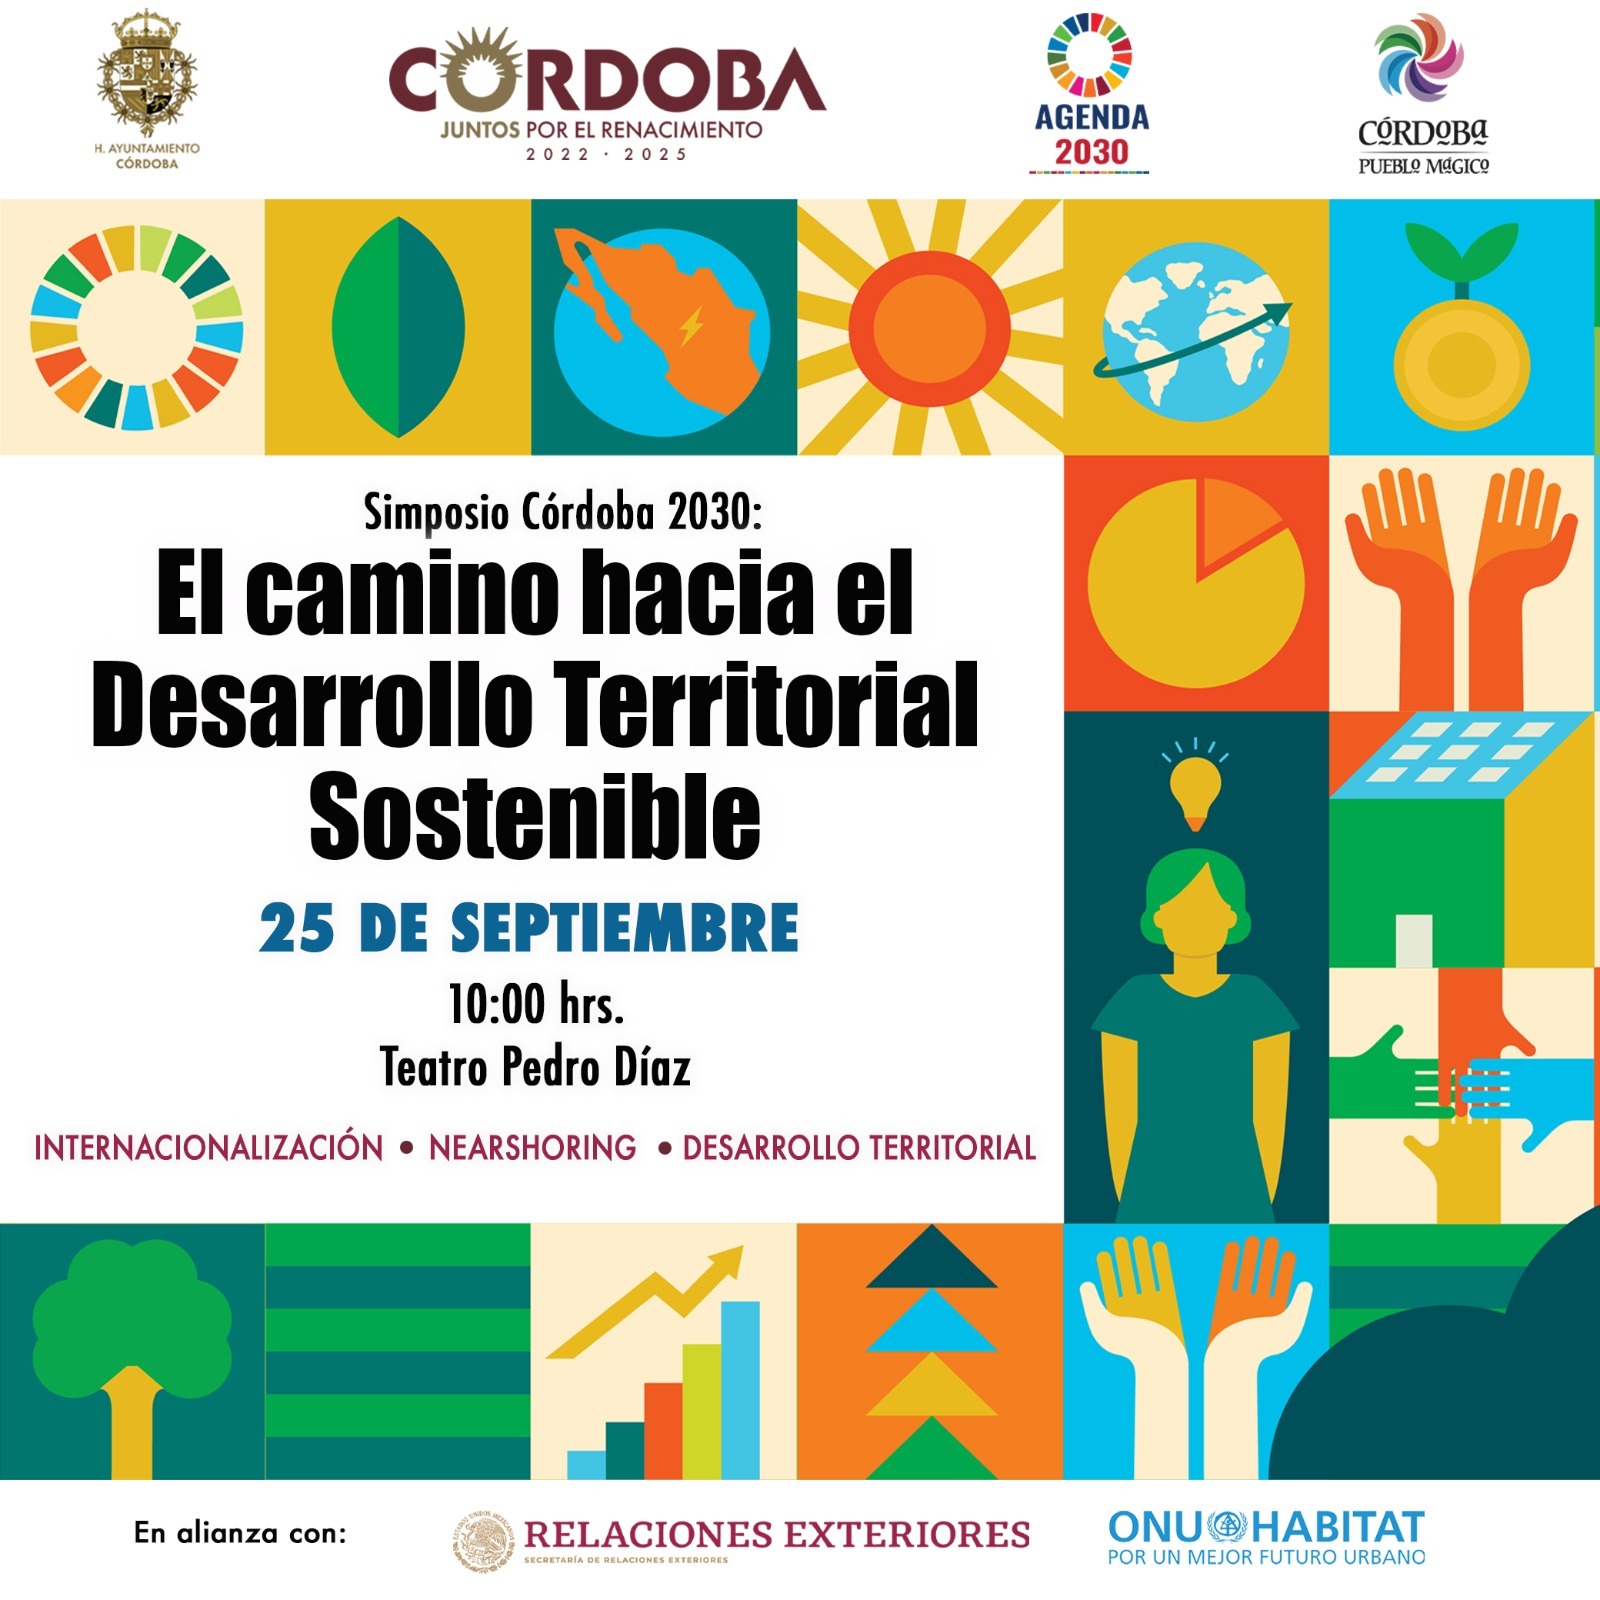 Simposio Córdoba 2030: El camino hacia el Desarrollo Territorial Sostenible